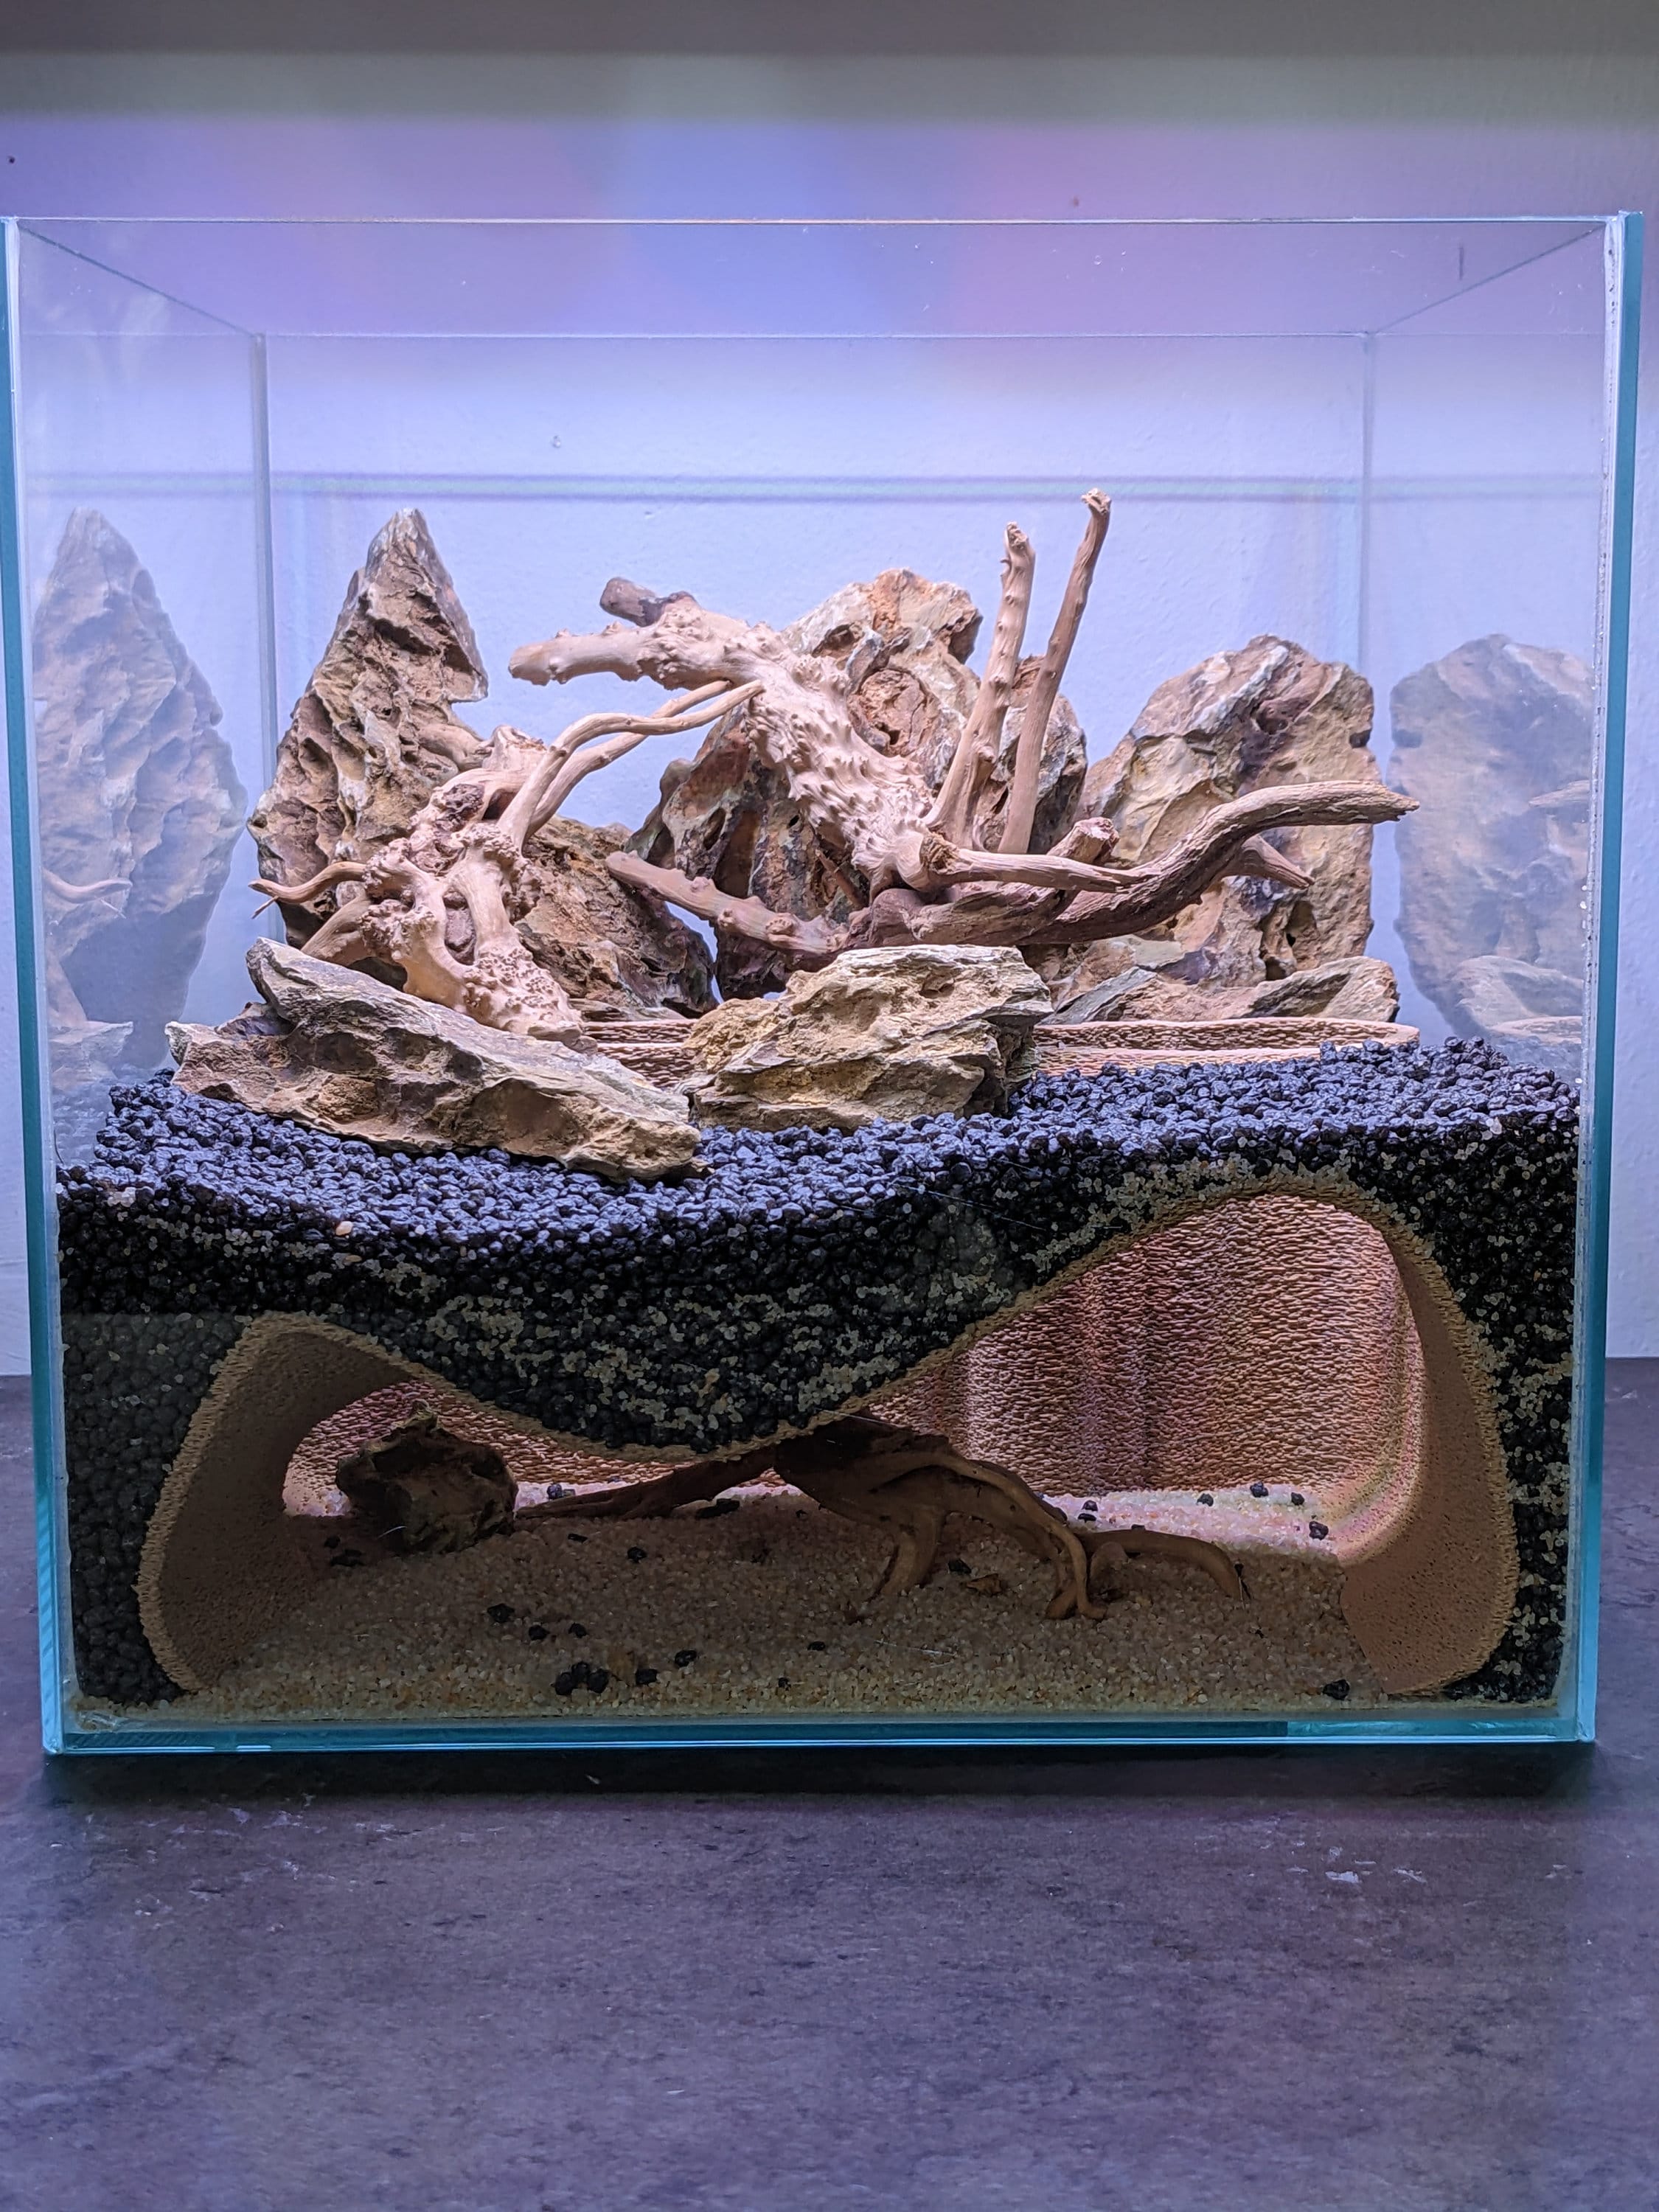 Ancienne pierre collée aquascape pour nano aquarium 30x30x30cm